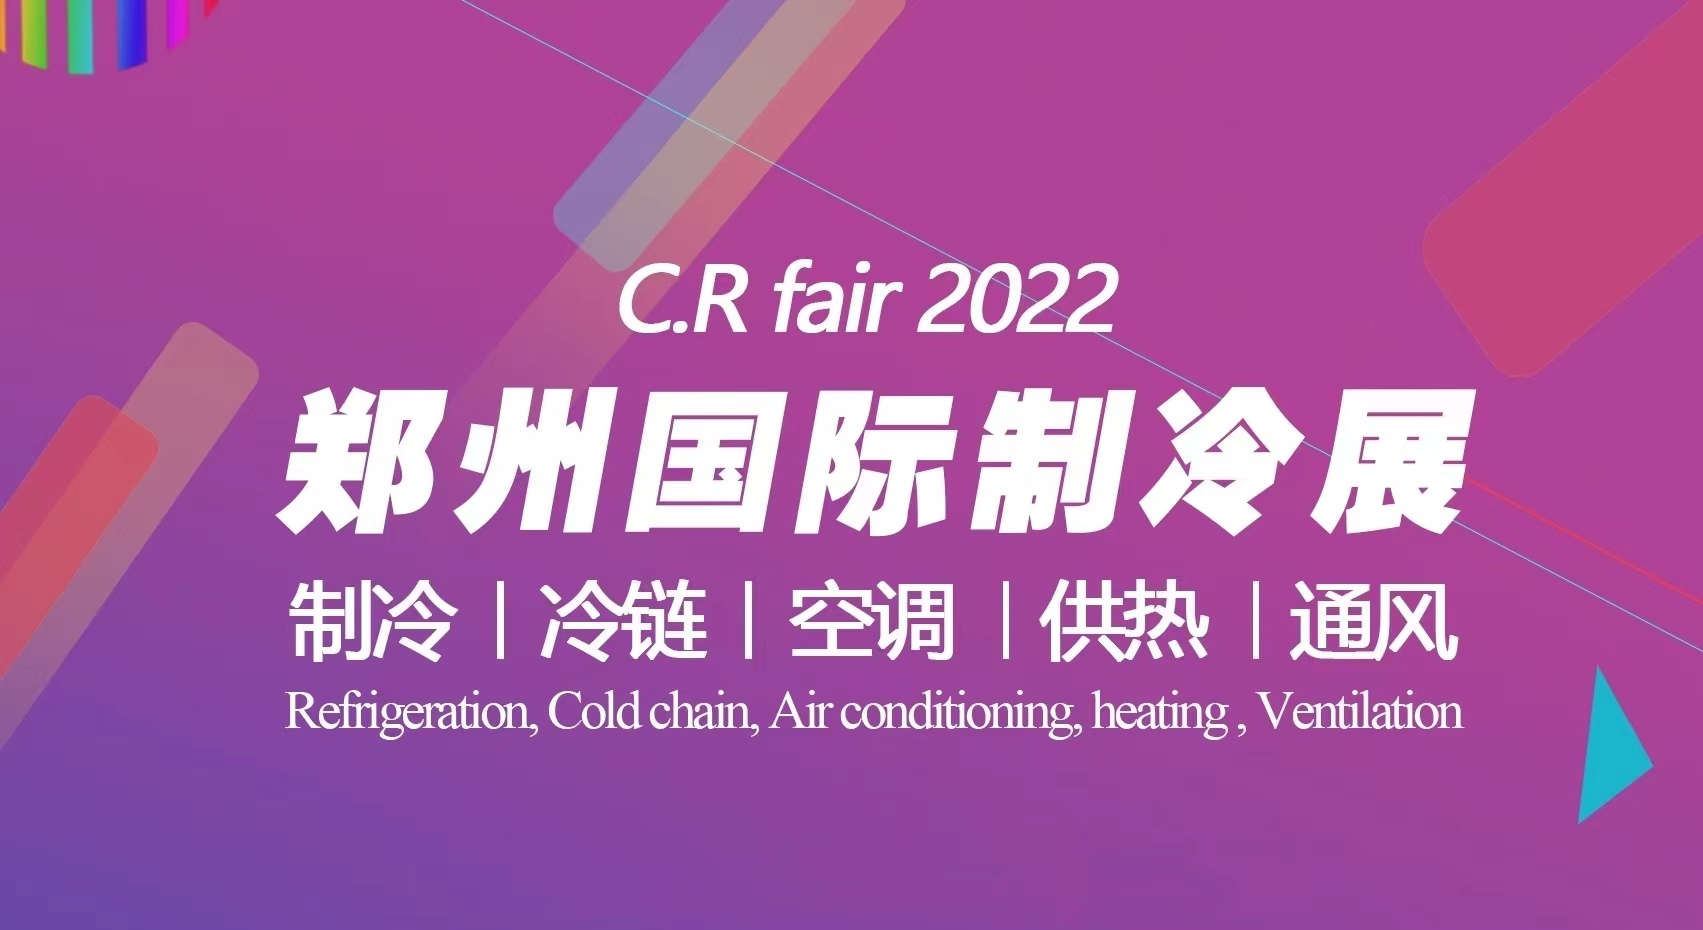 关于延期举办2022中国郑州制冷、冷链、空调、供热及通风展览会的通知 